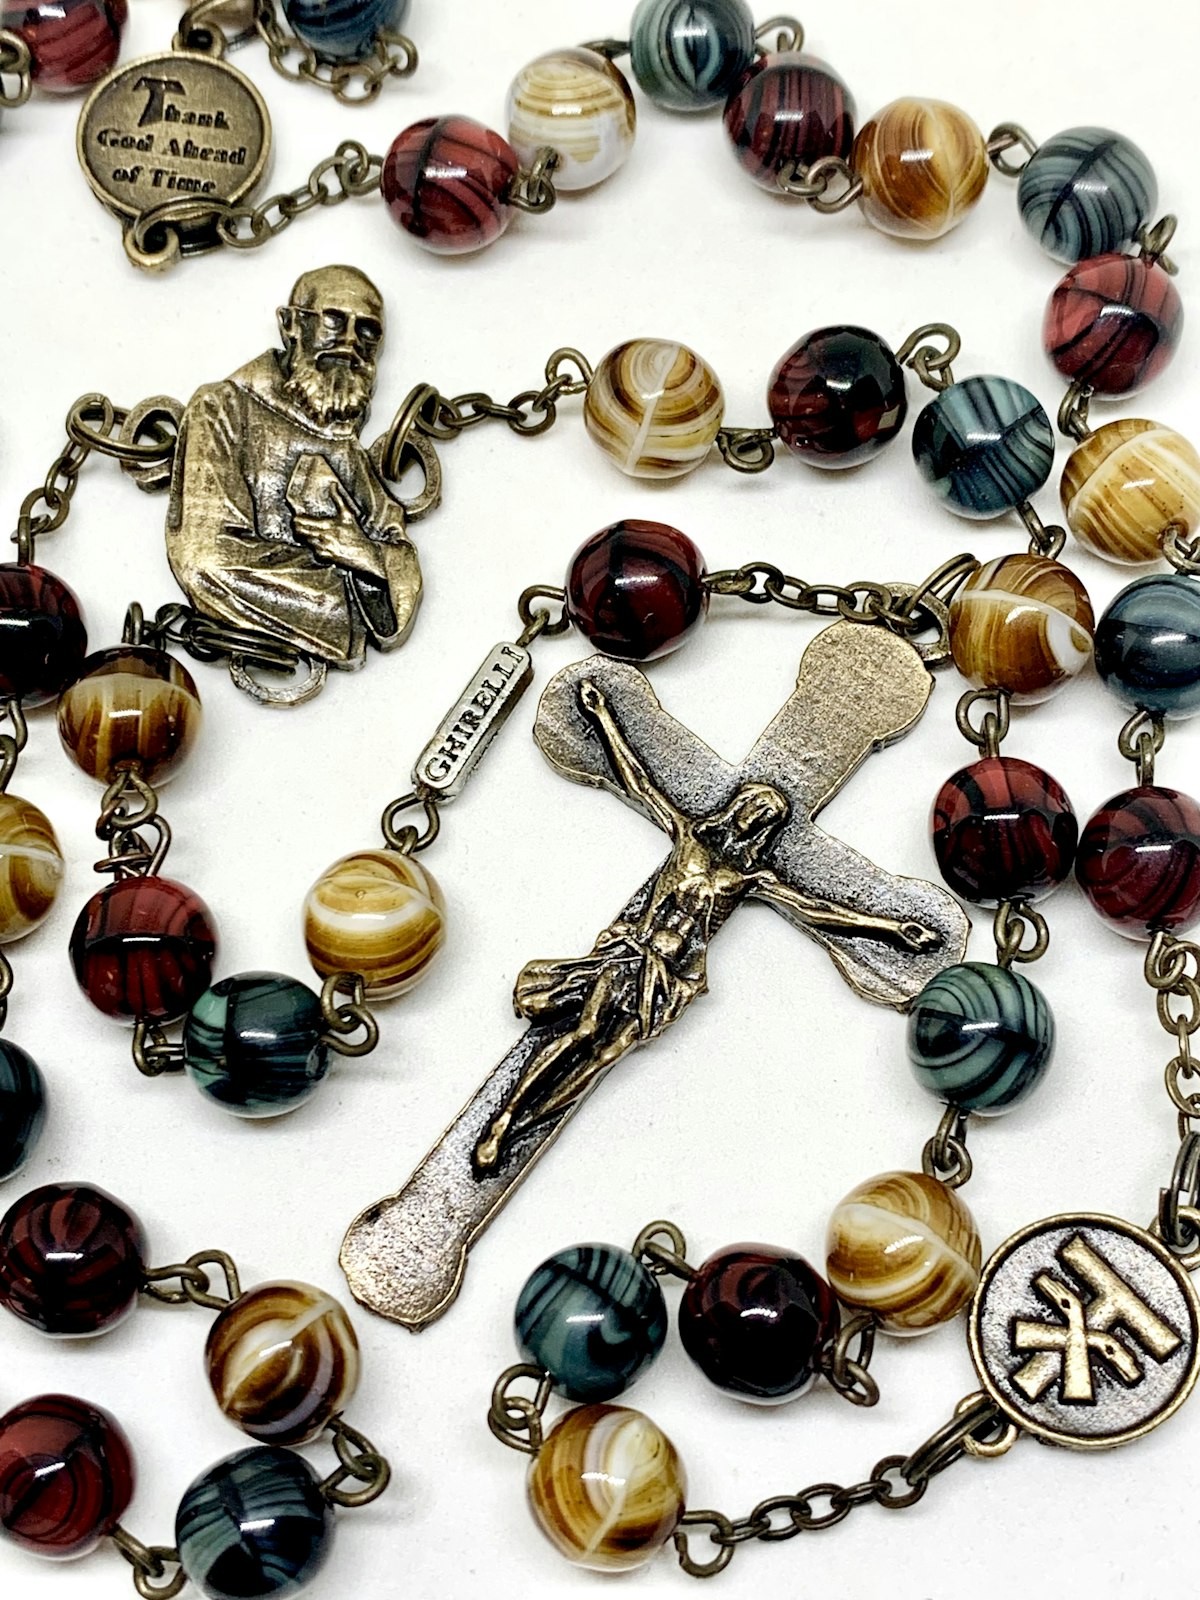 El rosario del Beato Solanus Casey incluye cuentas que reflejan la vida del santo fraile, incluida la cruz Tau y los conocidos dichos del Beato Solanus, como "Bendito sea Dios en todos sus designios".